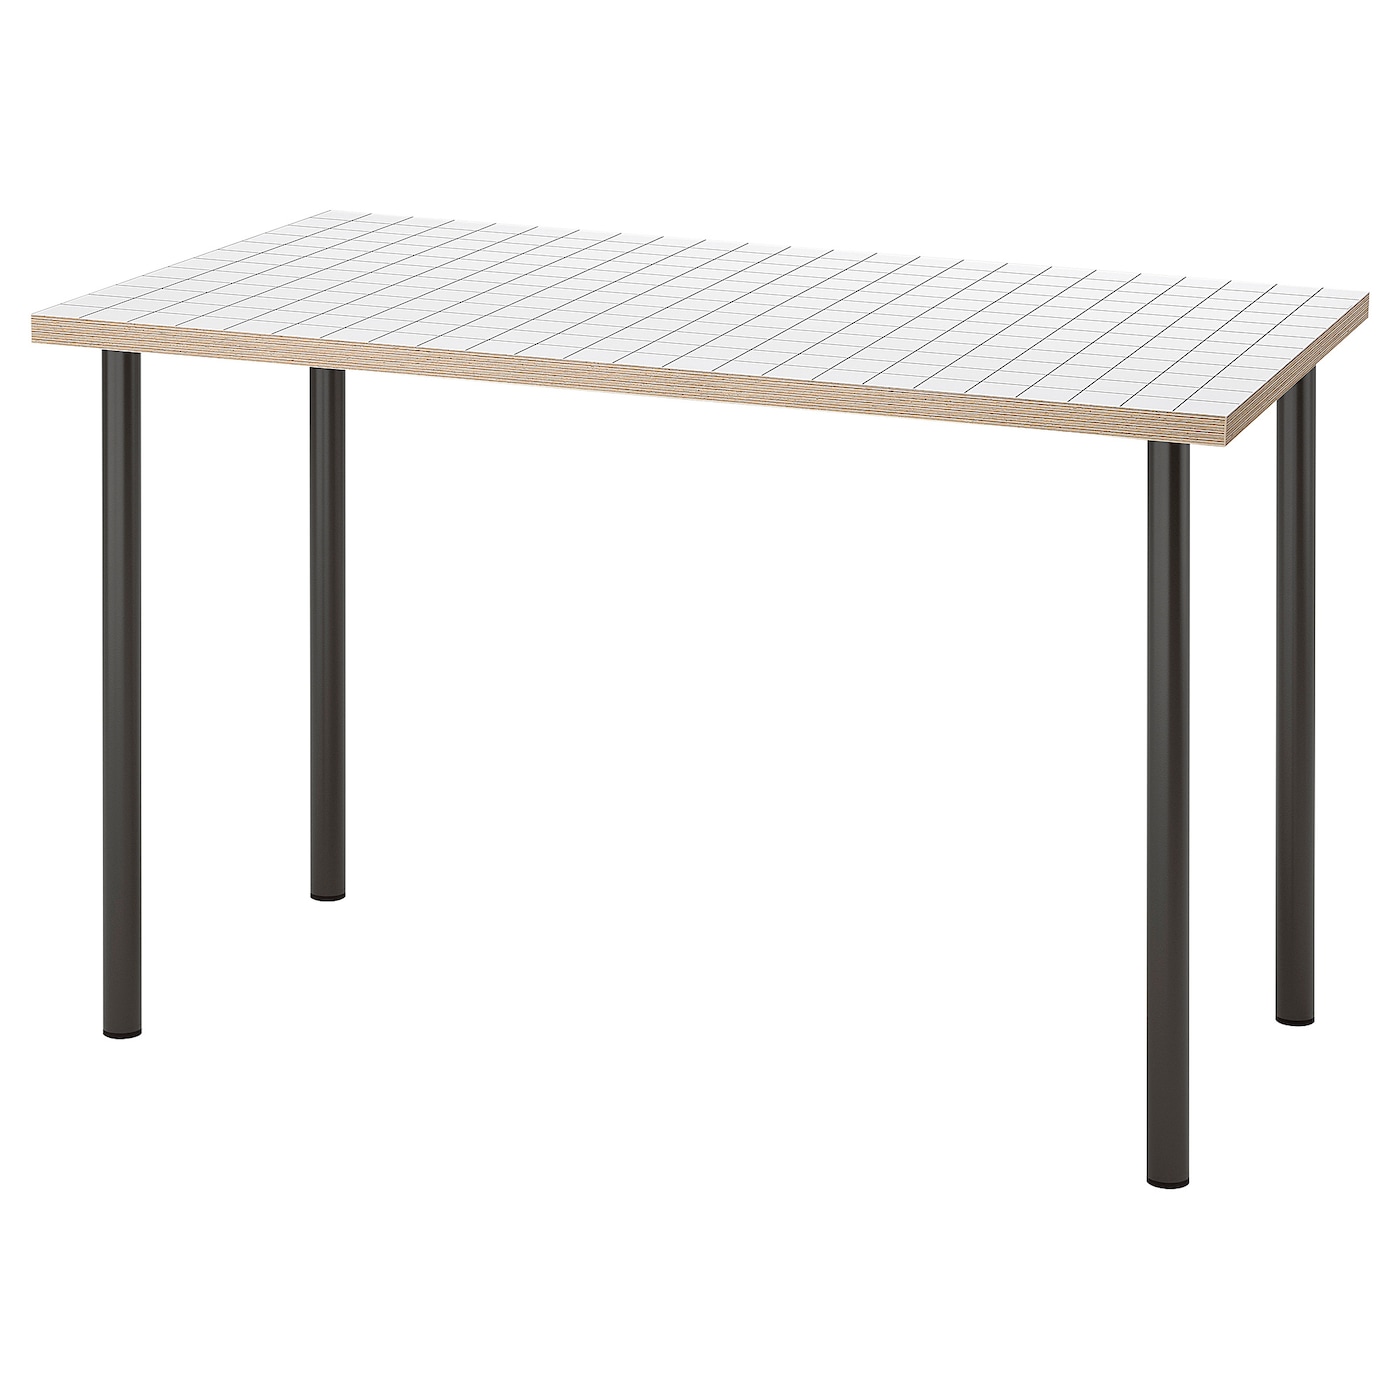 Письменный стол - LAGKAPTEN / ADILSK IKEA /  ЛАГКАПТЕН / АДИЛЬС ИКЕА,  73х60 см, черный/белый